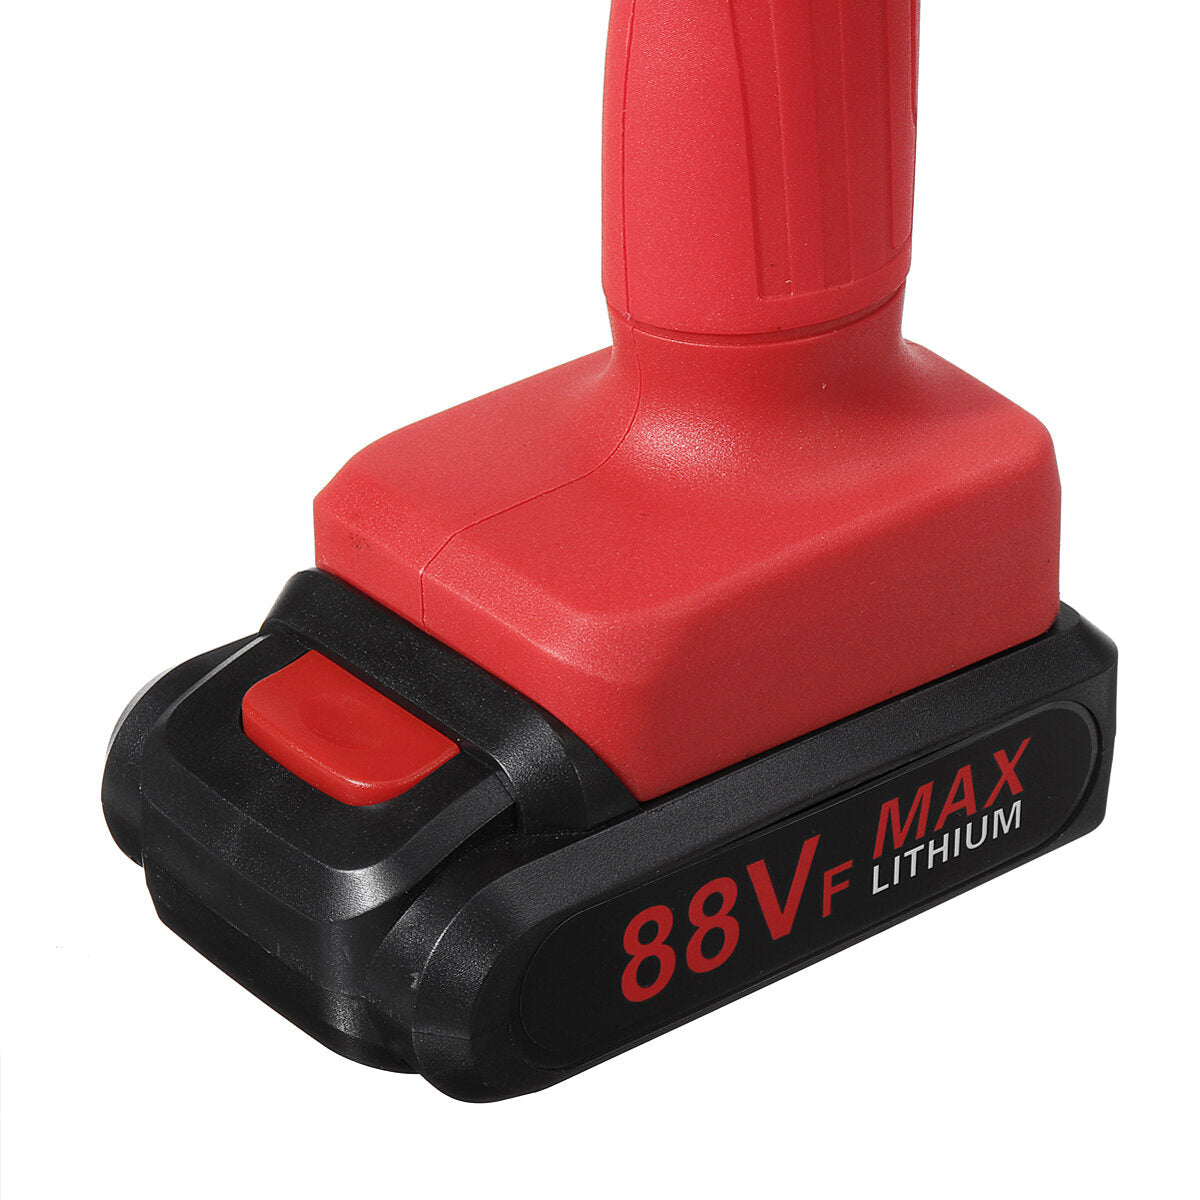 kiwarm 88vf 6 inch oplaadbare kettingzaag eenhandige kettingzaag houtsnijder tool digitale display indicator batterij